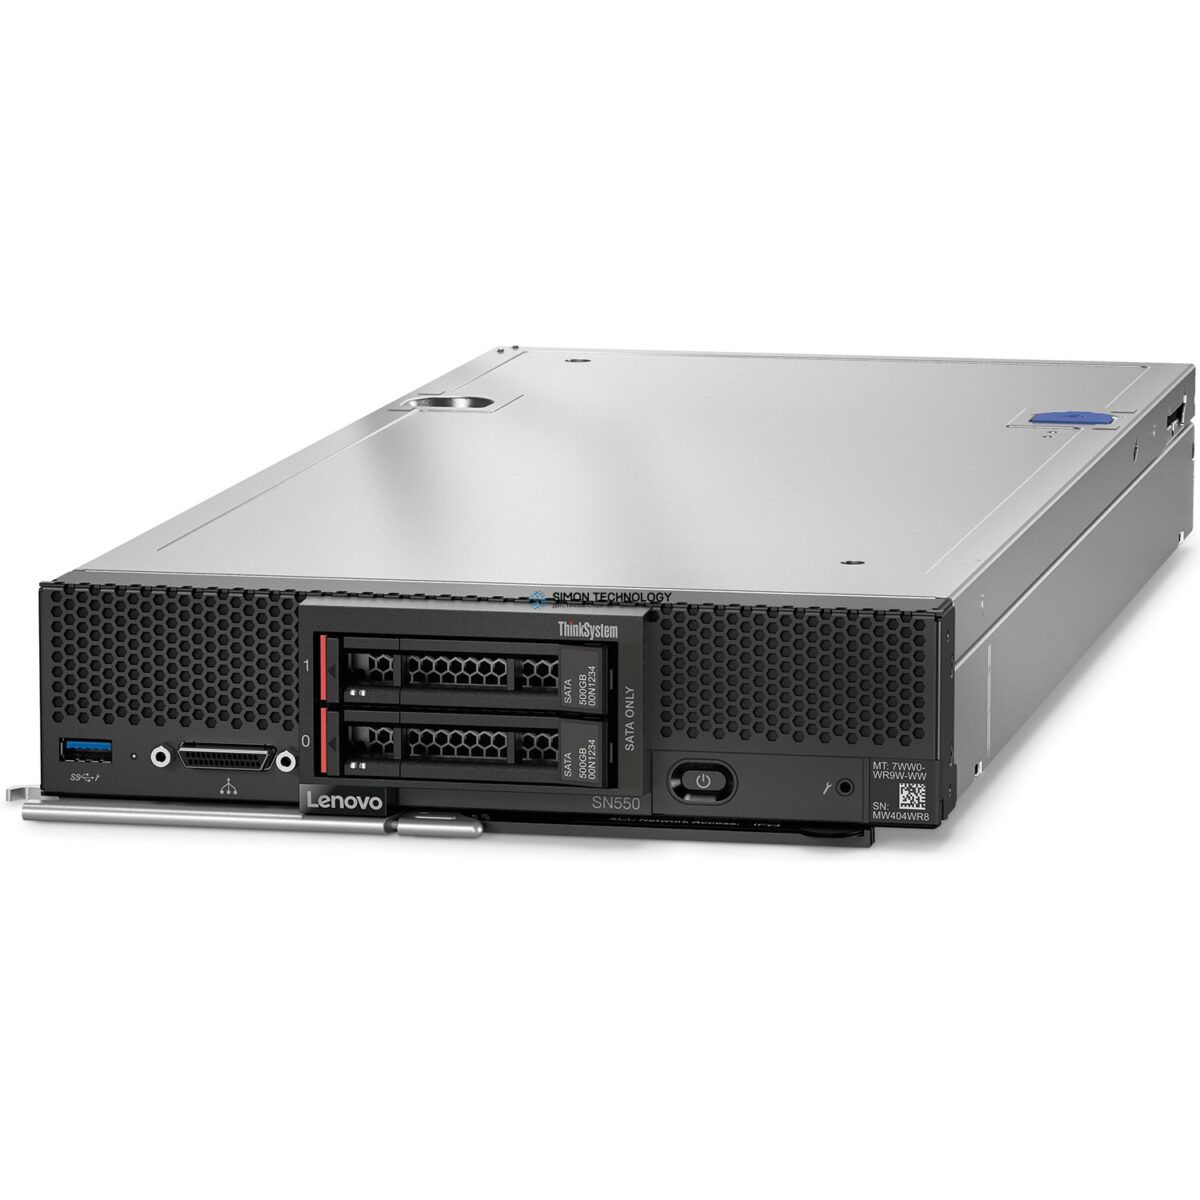 Сервер Lenovo SN550 Blade Server Configure To Order (01PF030)